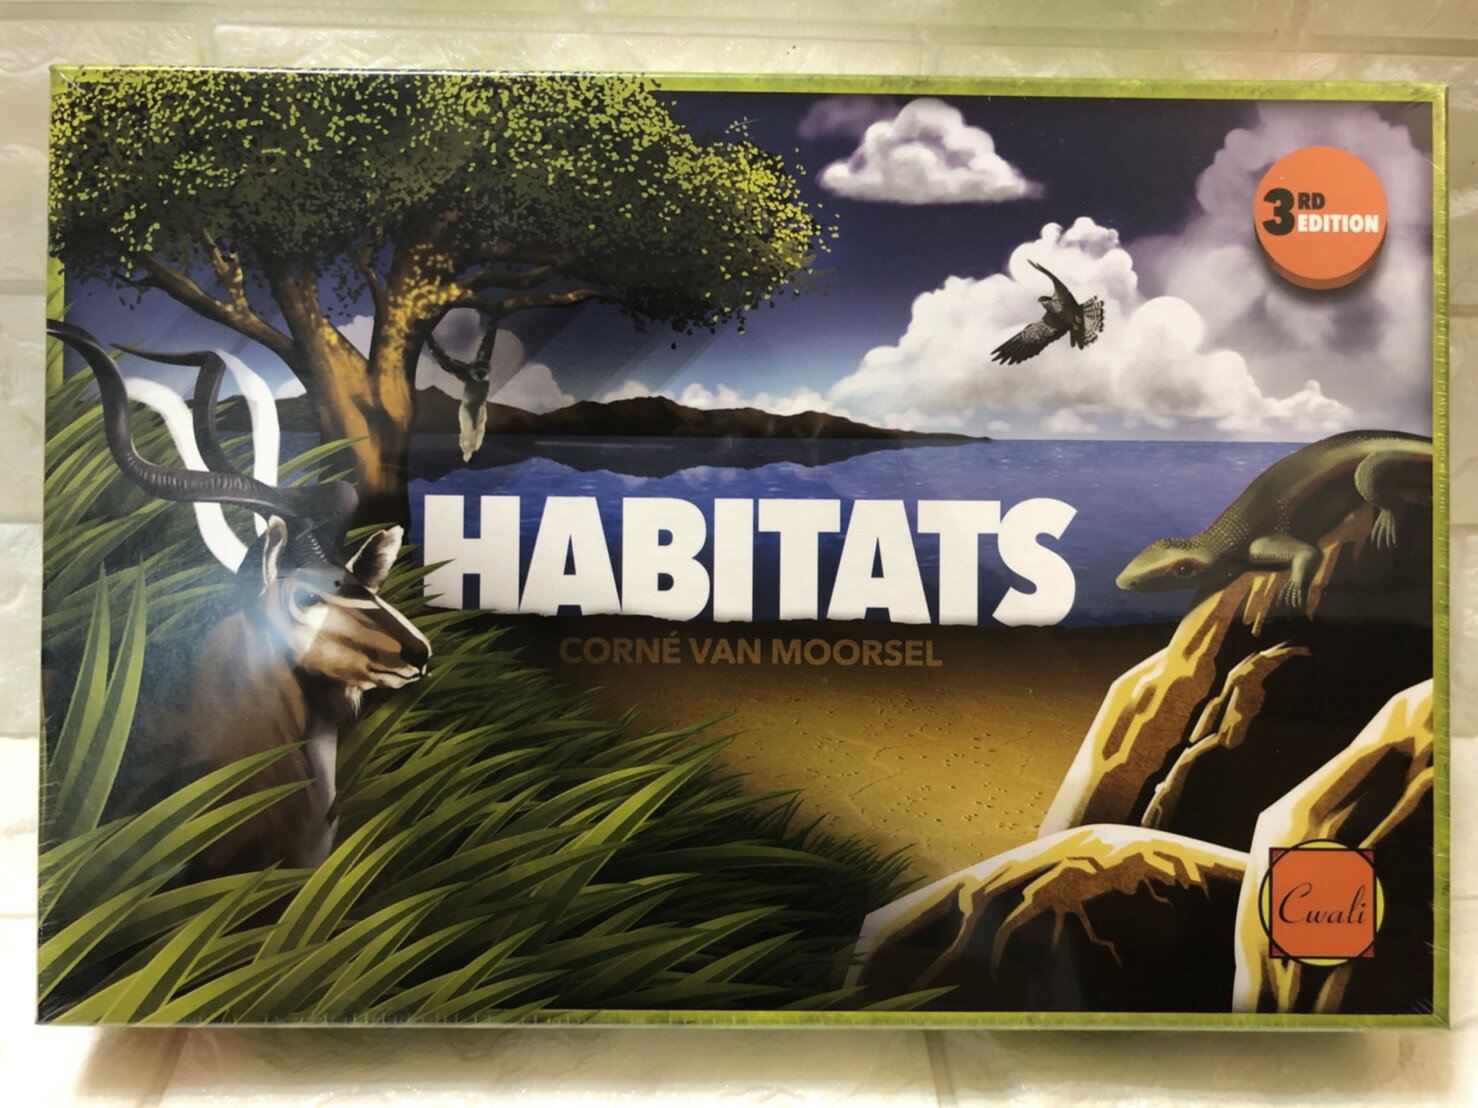 【桌遊侍】Habitats 野生動物園 英文版 正版實體店面快速出貨 《免運.再送充足牌套》圖版桌遊.動物園桌遊.